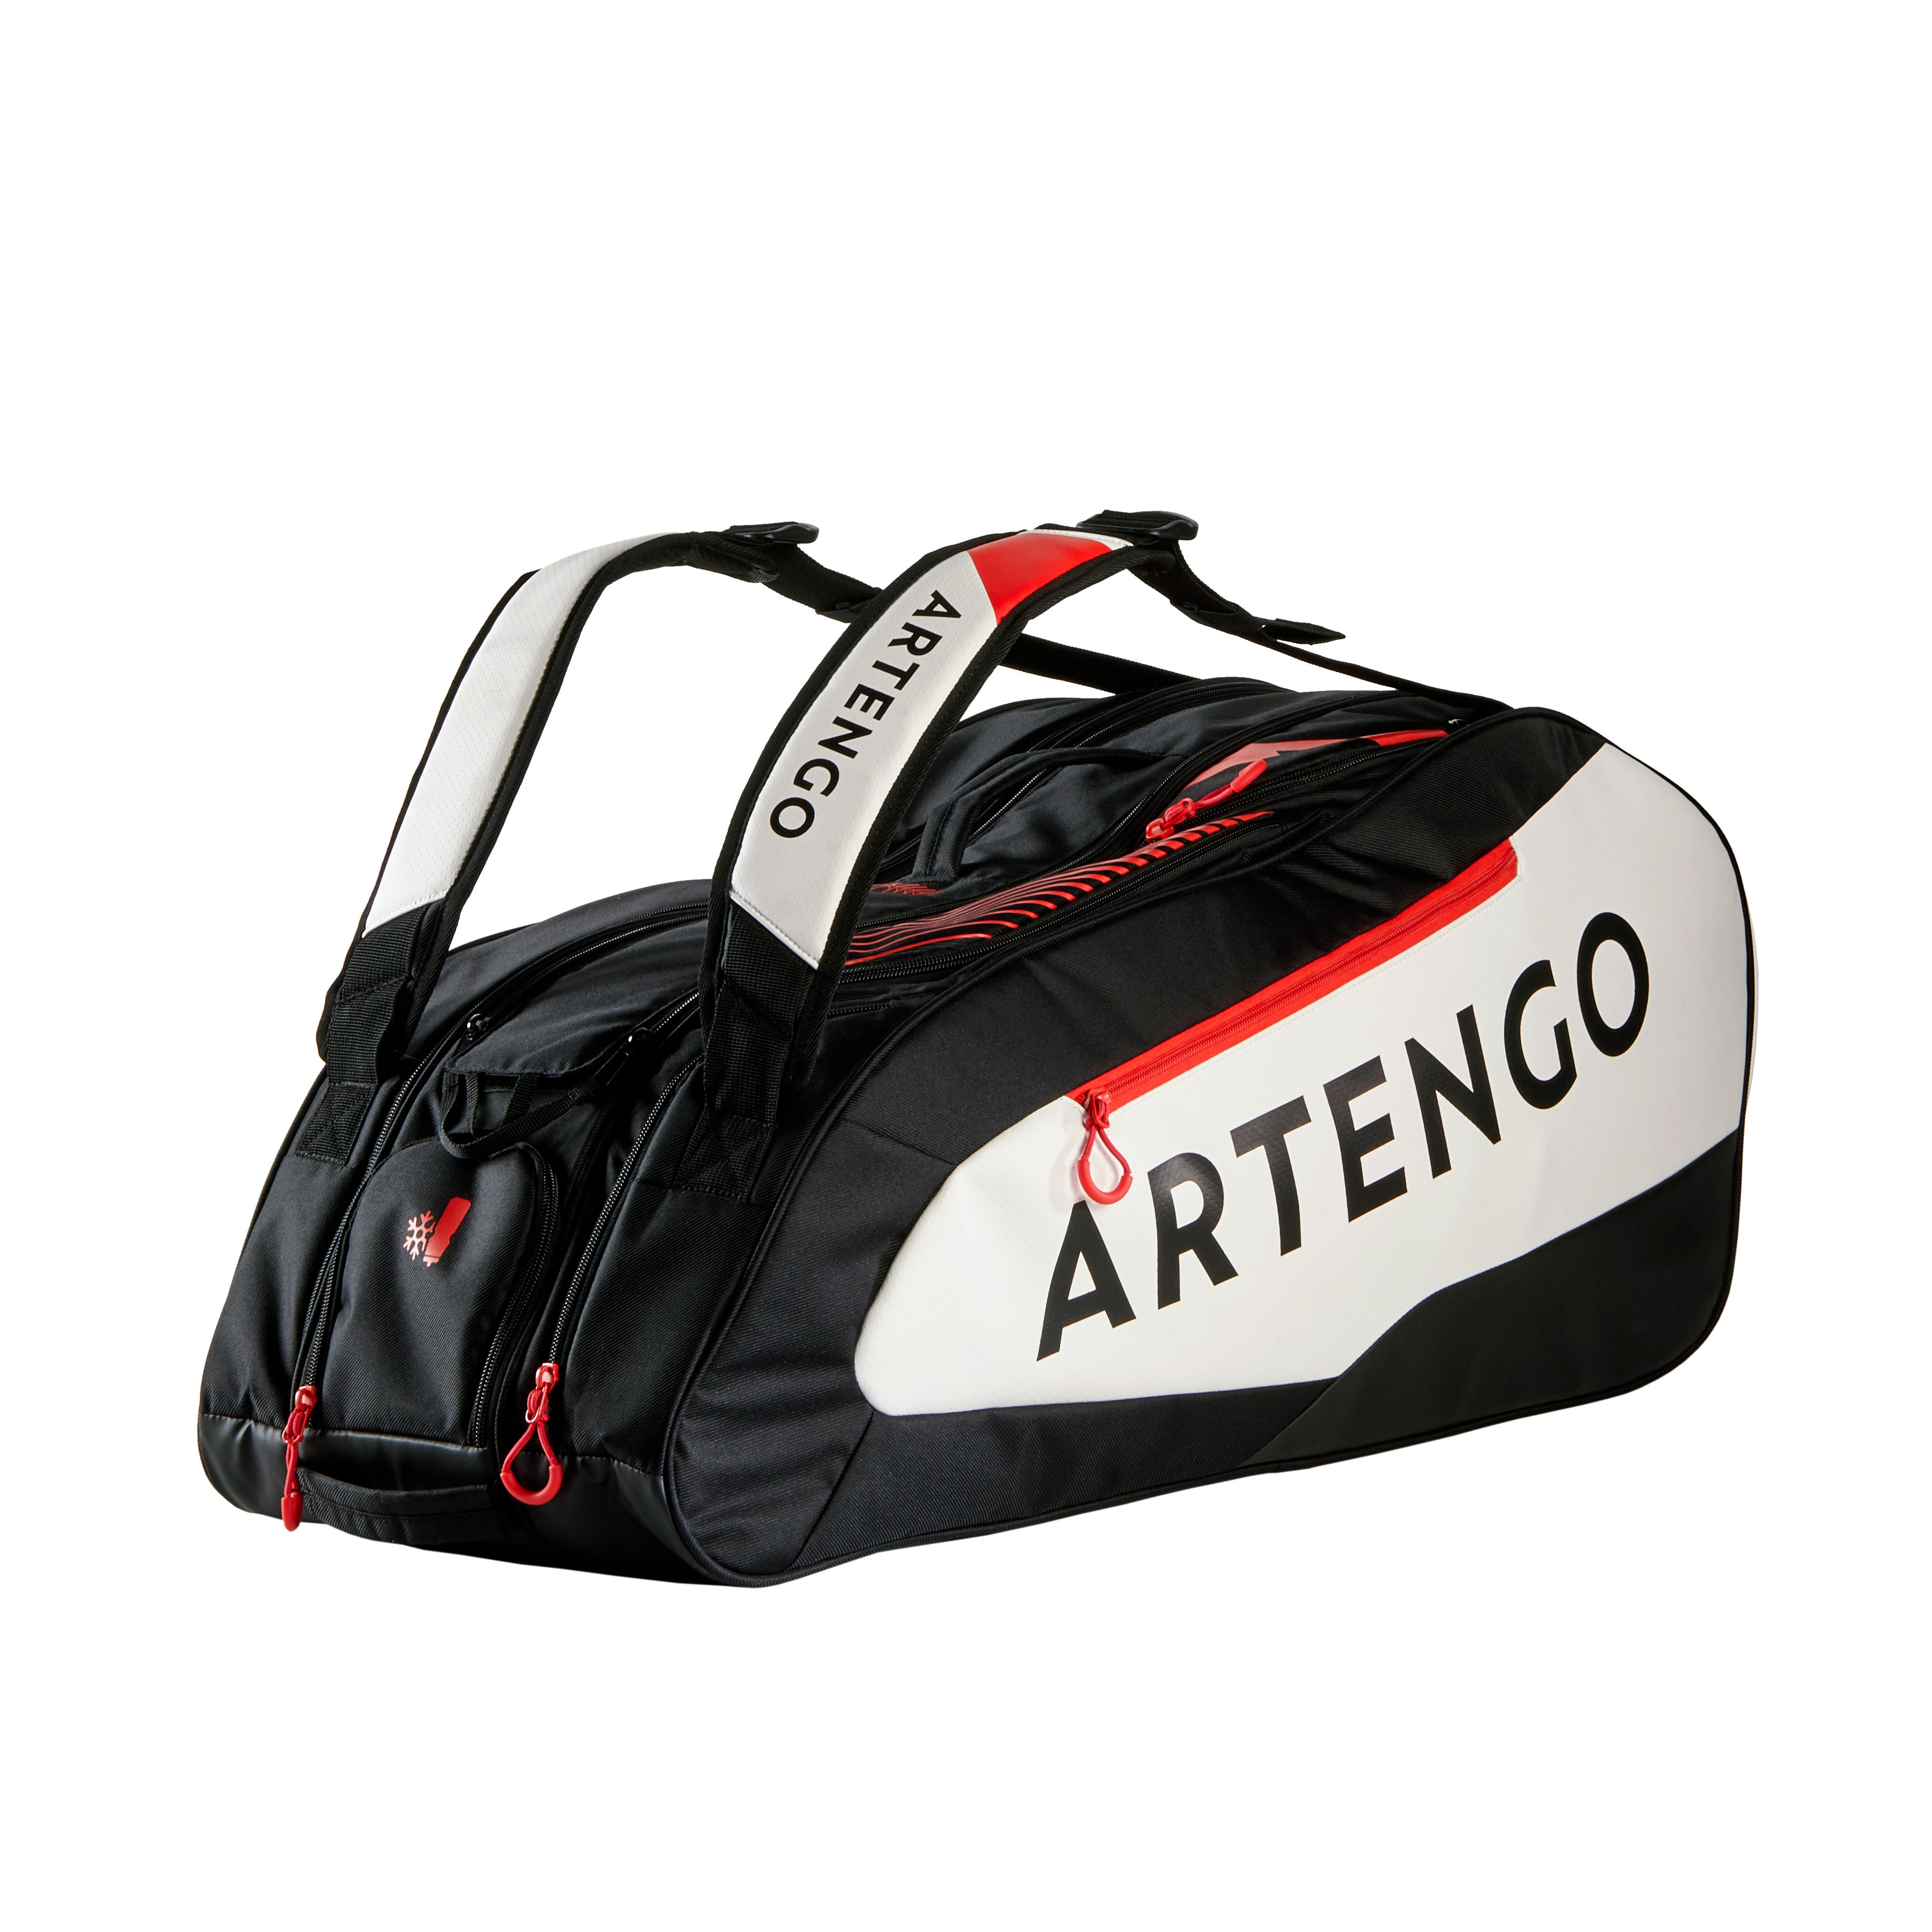 [ส่งฟรี ] กระเป๋าเทนนิสรุ่น 930 L (สีดำ/ขาว/แดง) Tennis Bag 9R 930 L - Black/White/Red Sport tennis Tennis Bag Equipment กระเป๋าเทนนิสแท้ คุณภาพสูง โปรโมชั่นสุดคุ้ม